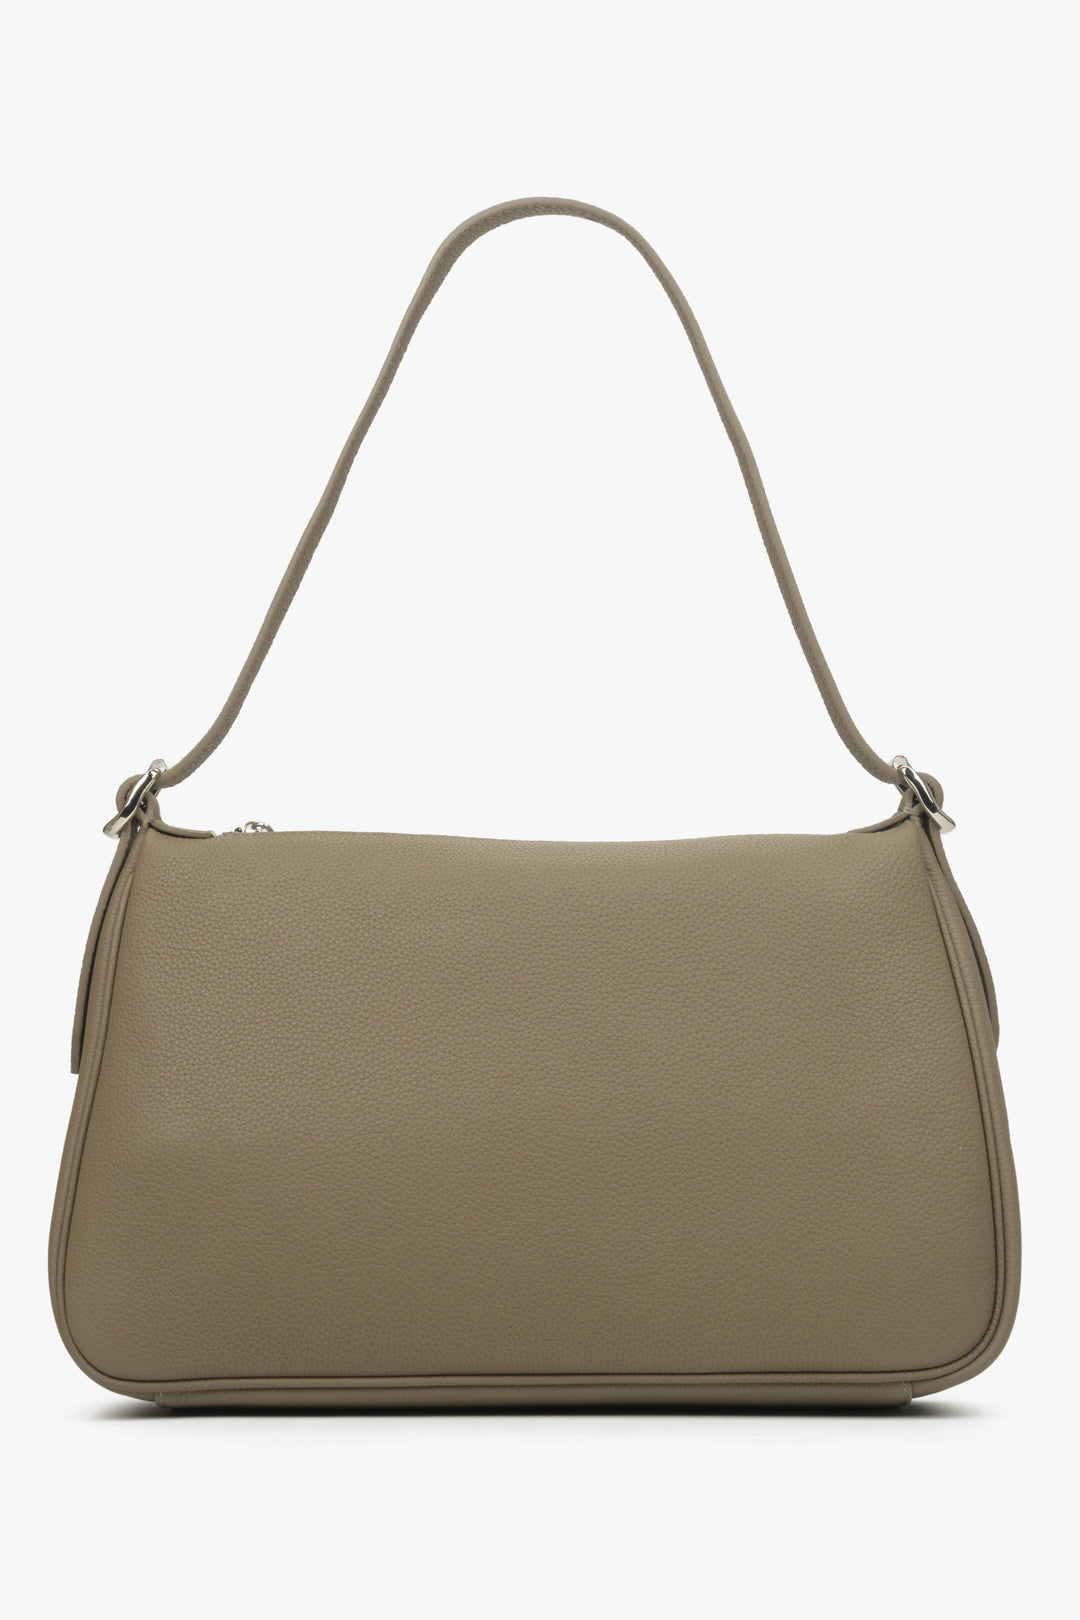 Estro women's handbag in beige-grey colour.